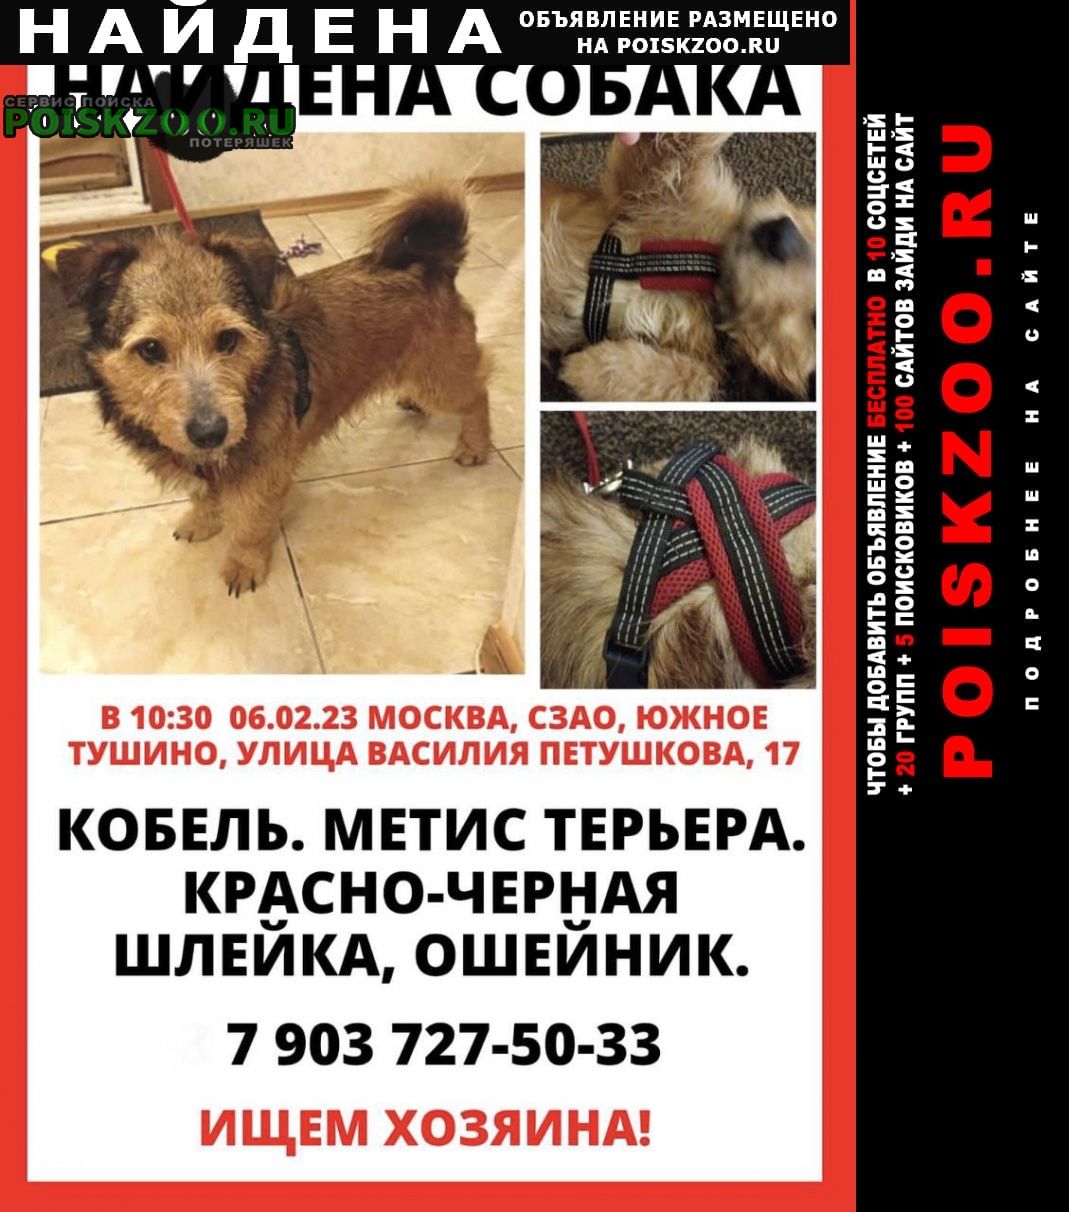 Москва Найдена собака кобель, терьер, красная шлейка